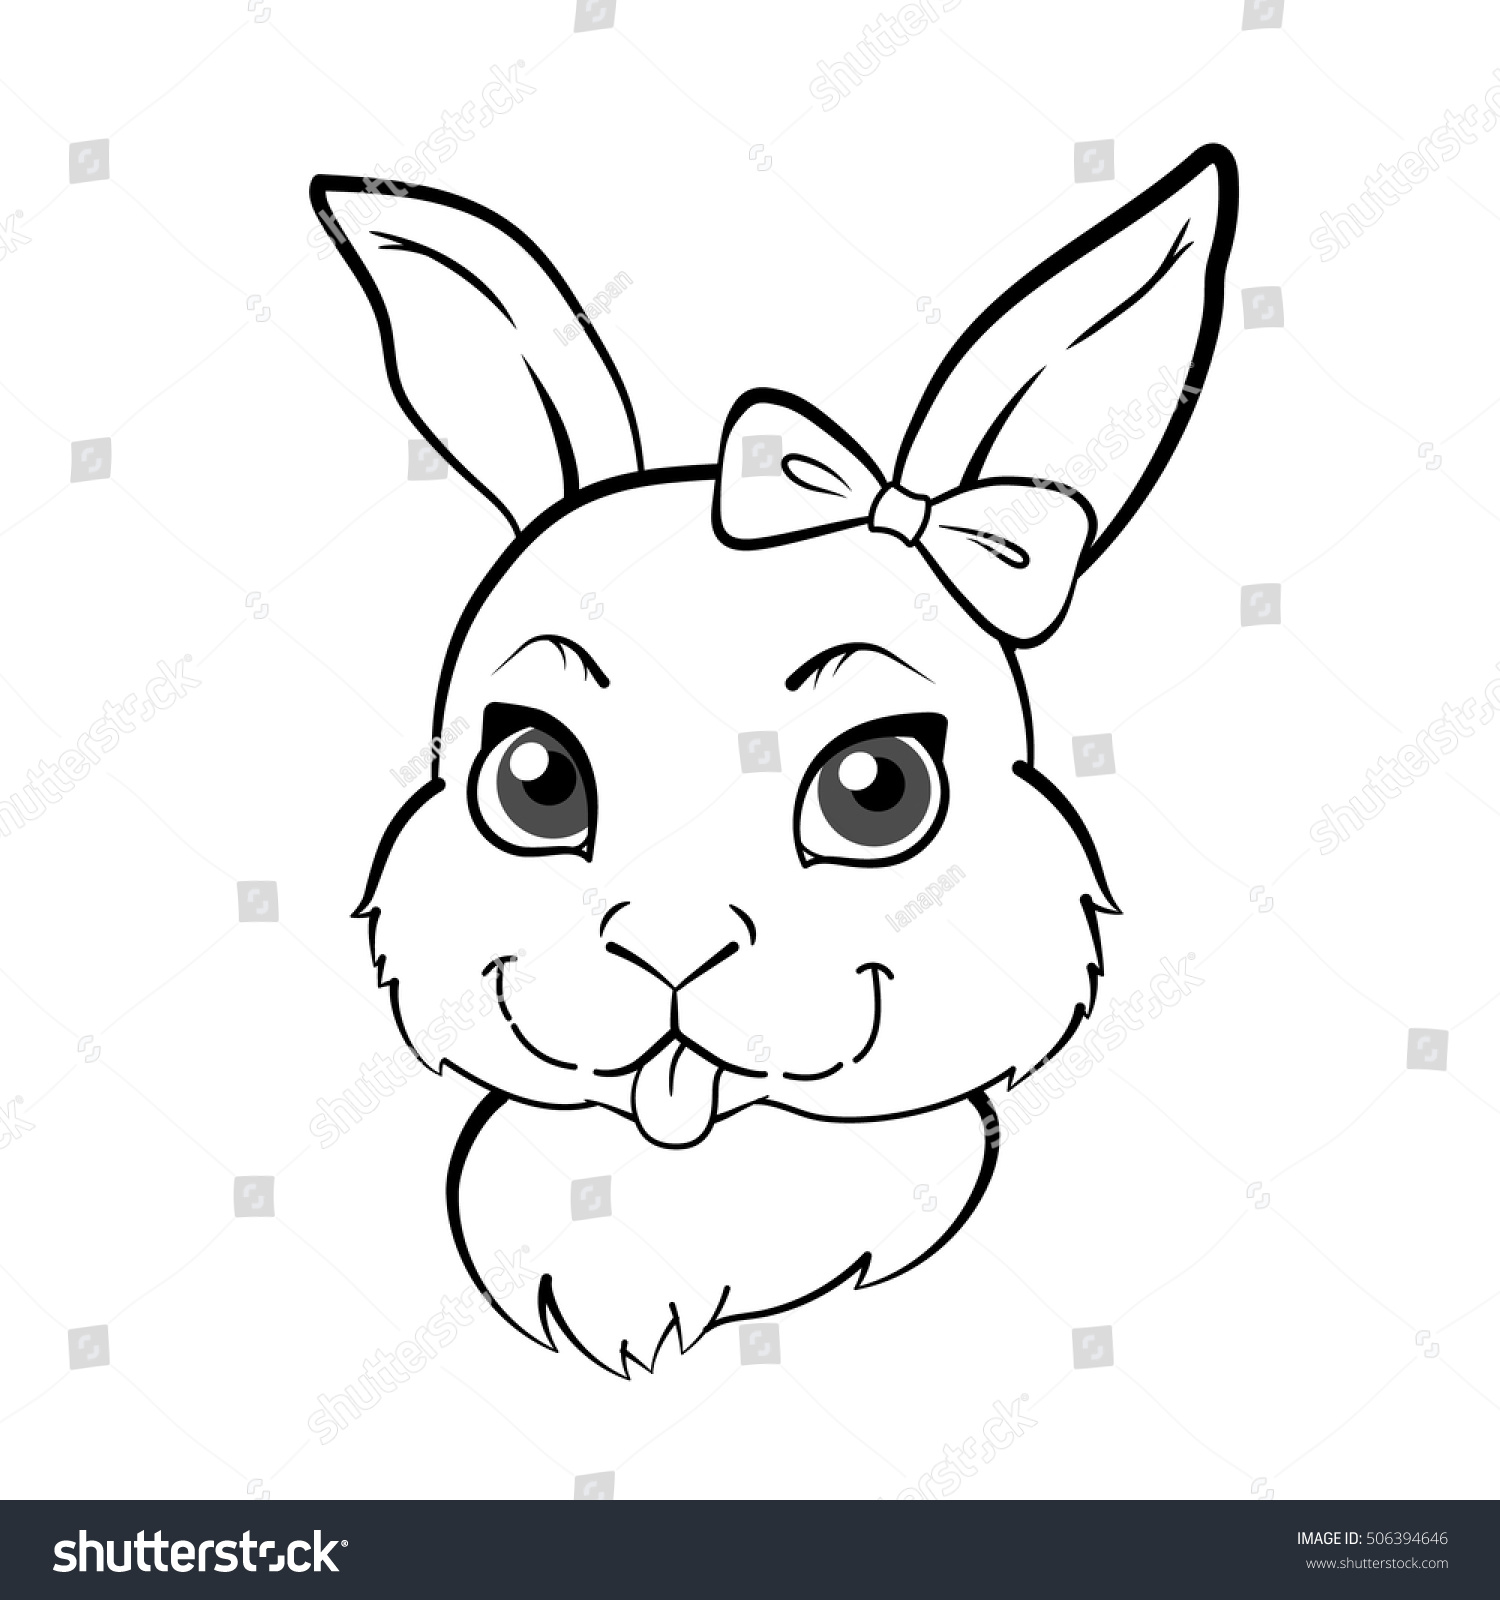 Как нарисовать голову кролика